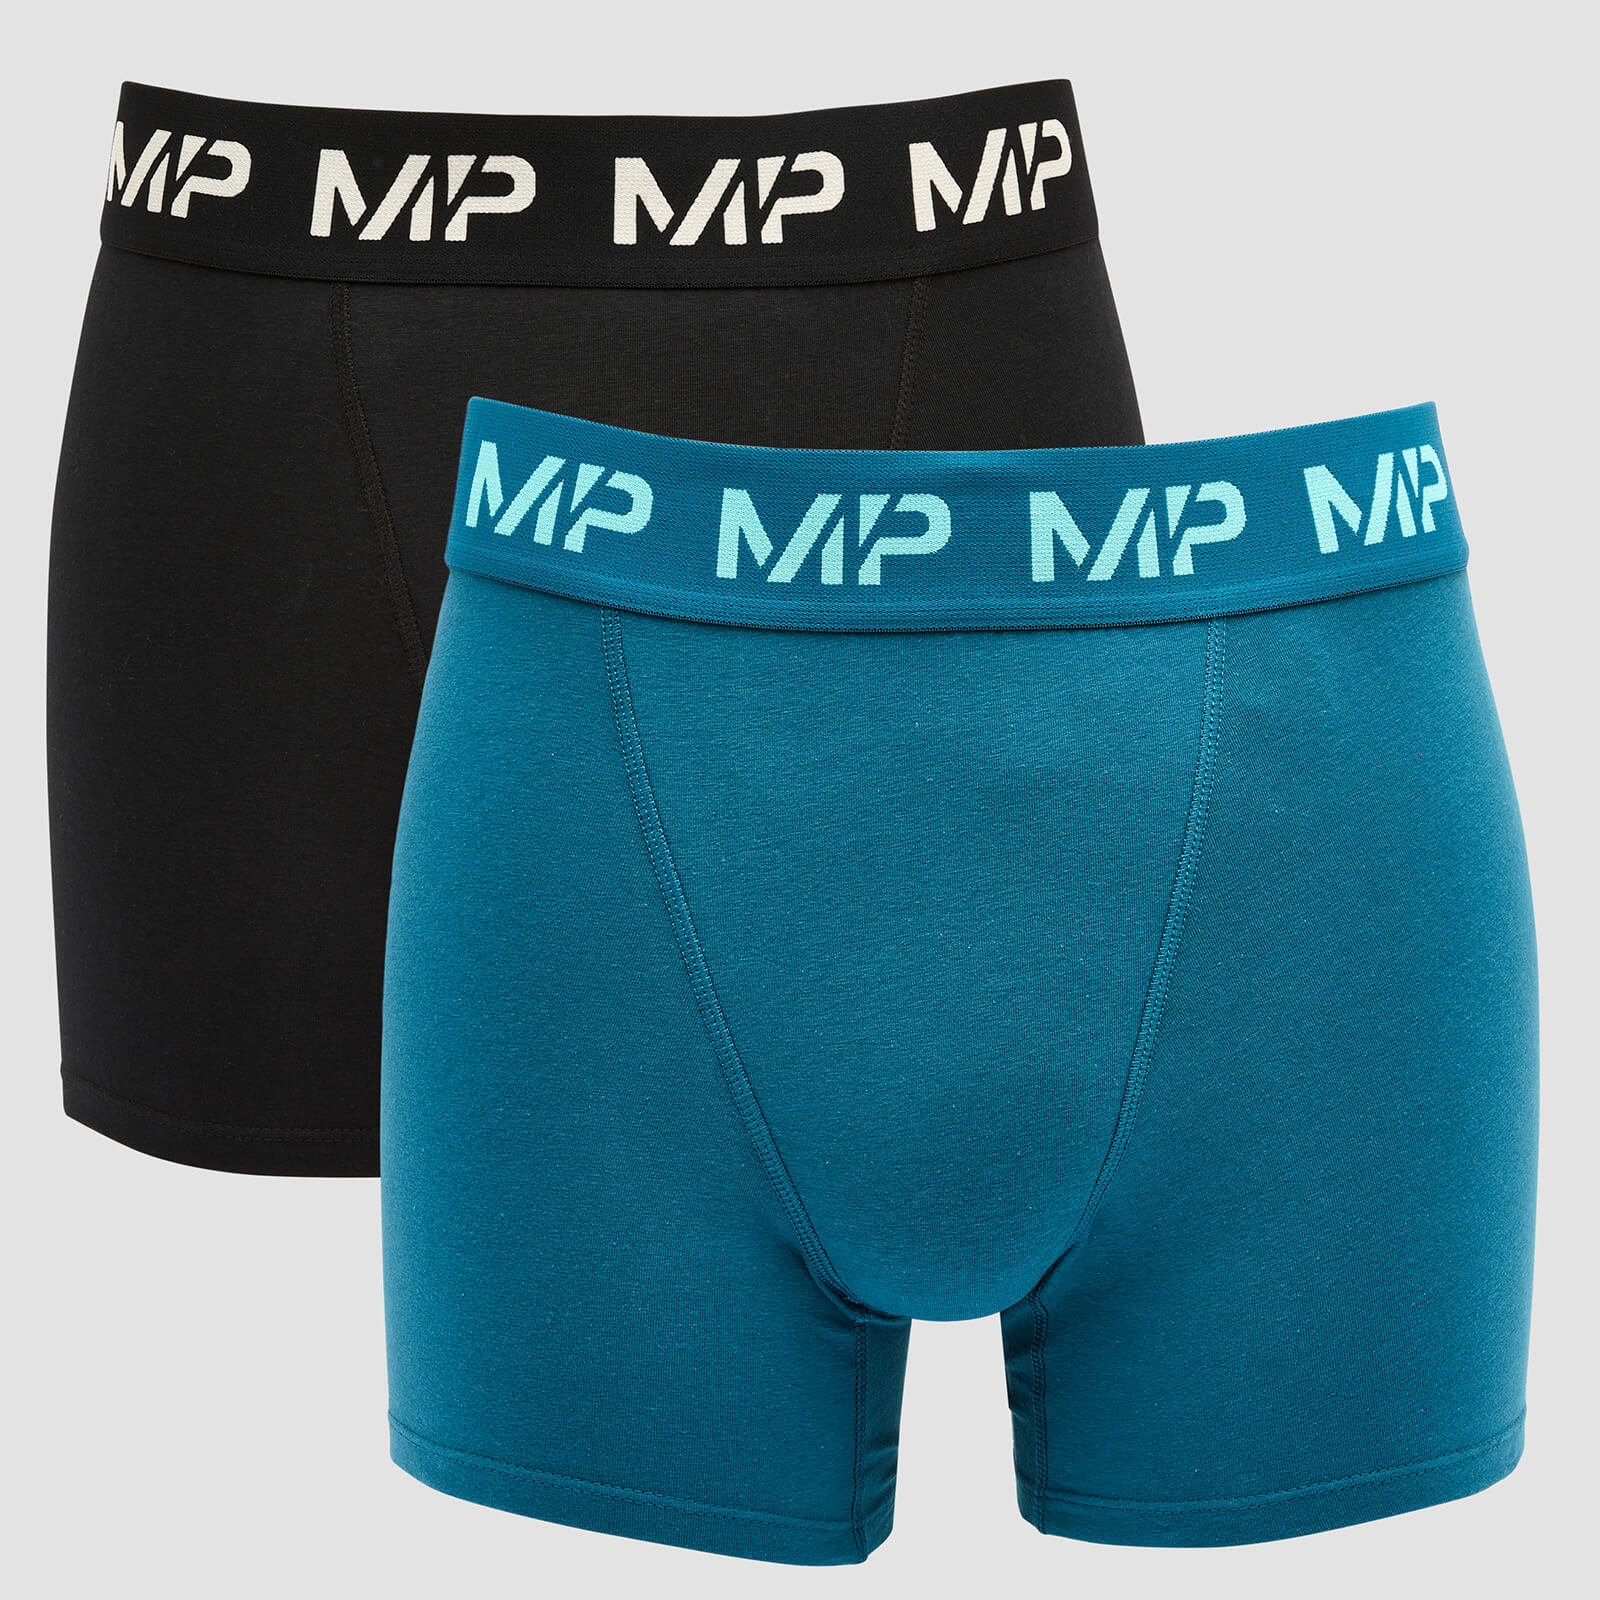 MP мъжки боксерки Impact, лимитирана серия (2 броя в опаковка) - черни/синьо-зелени